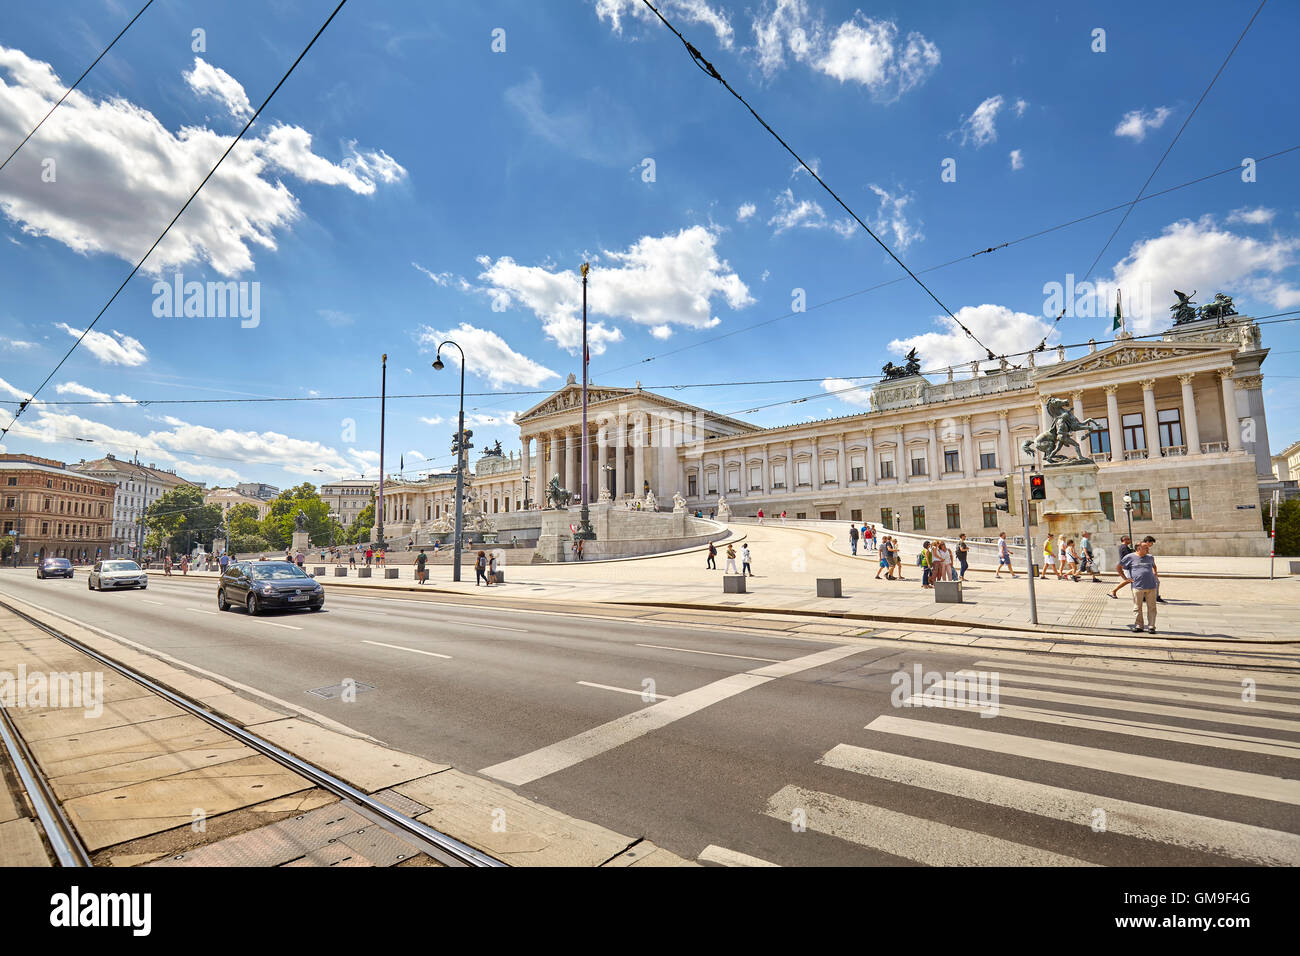 Vienne, Autriche - Août 14, 2016 : en face de l'édifice du parlement autrichien. Banque D'Images